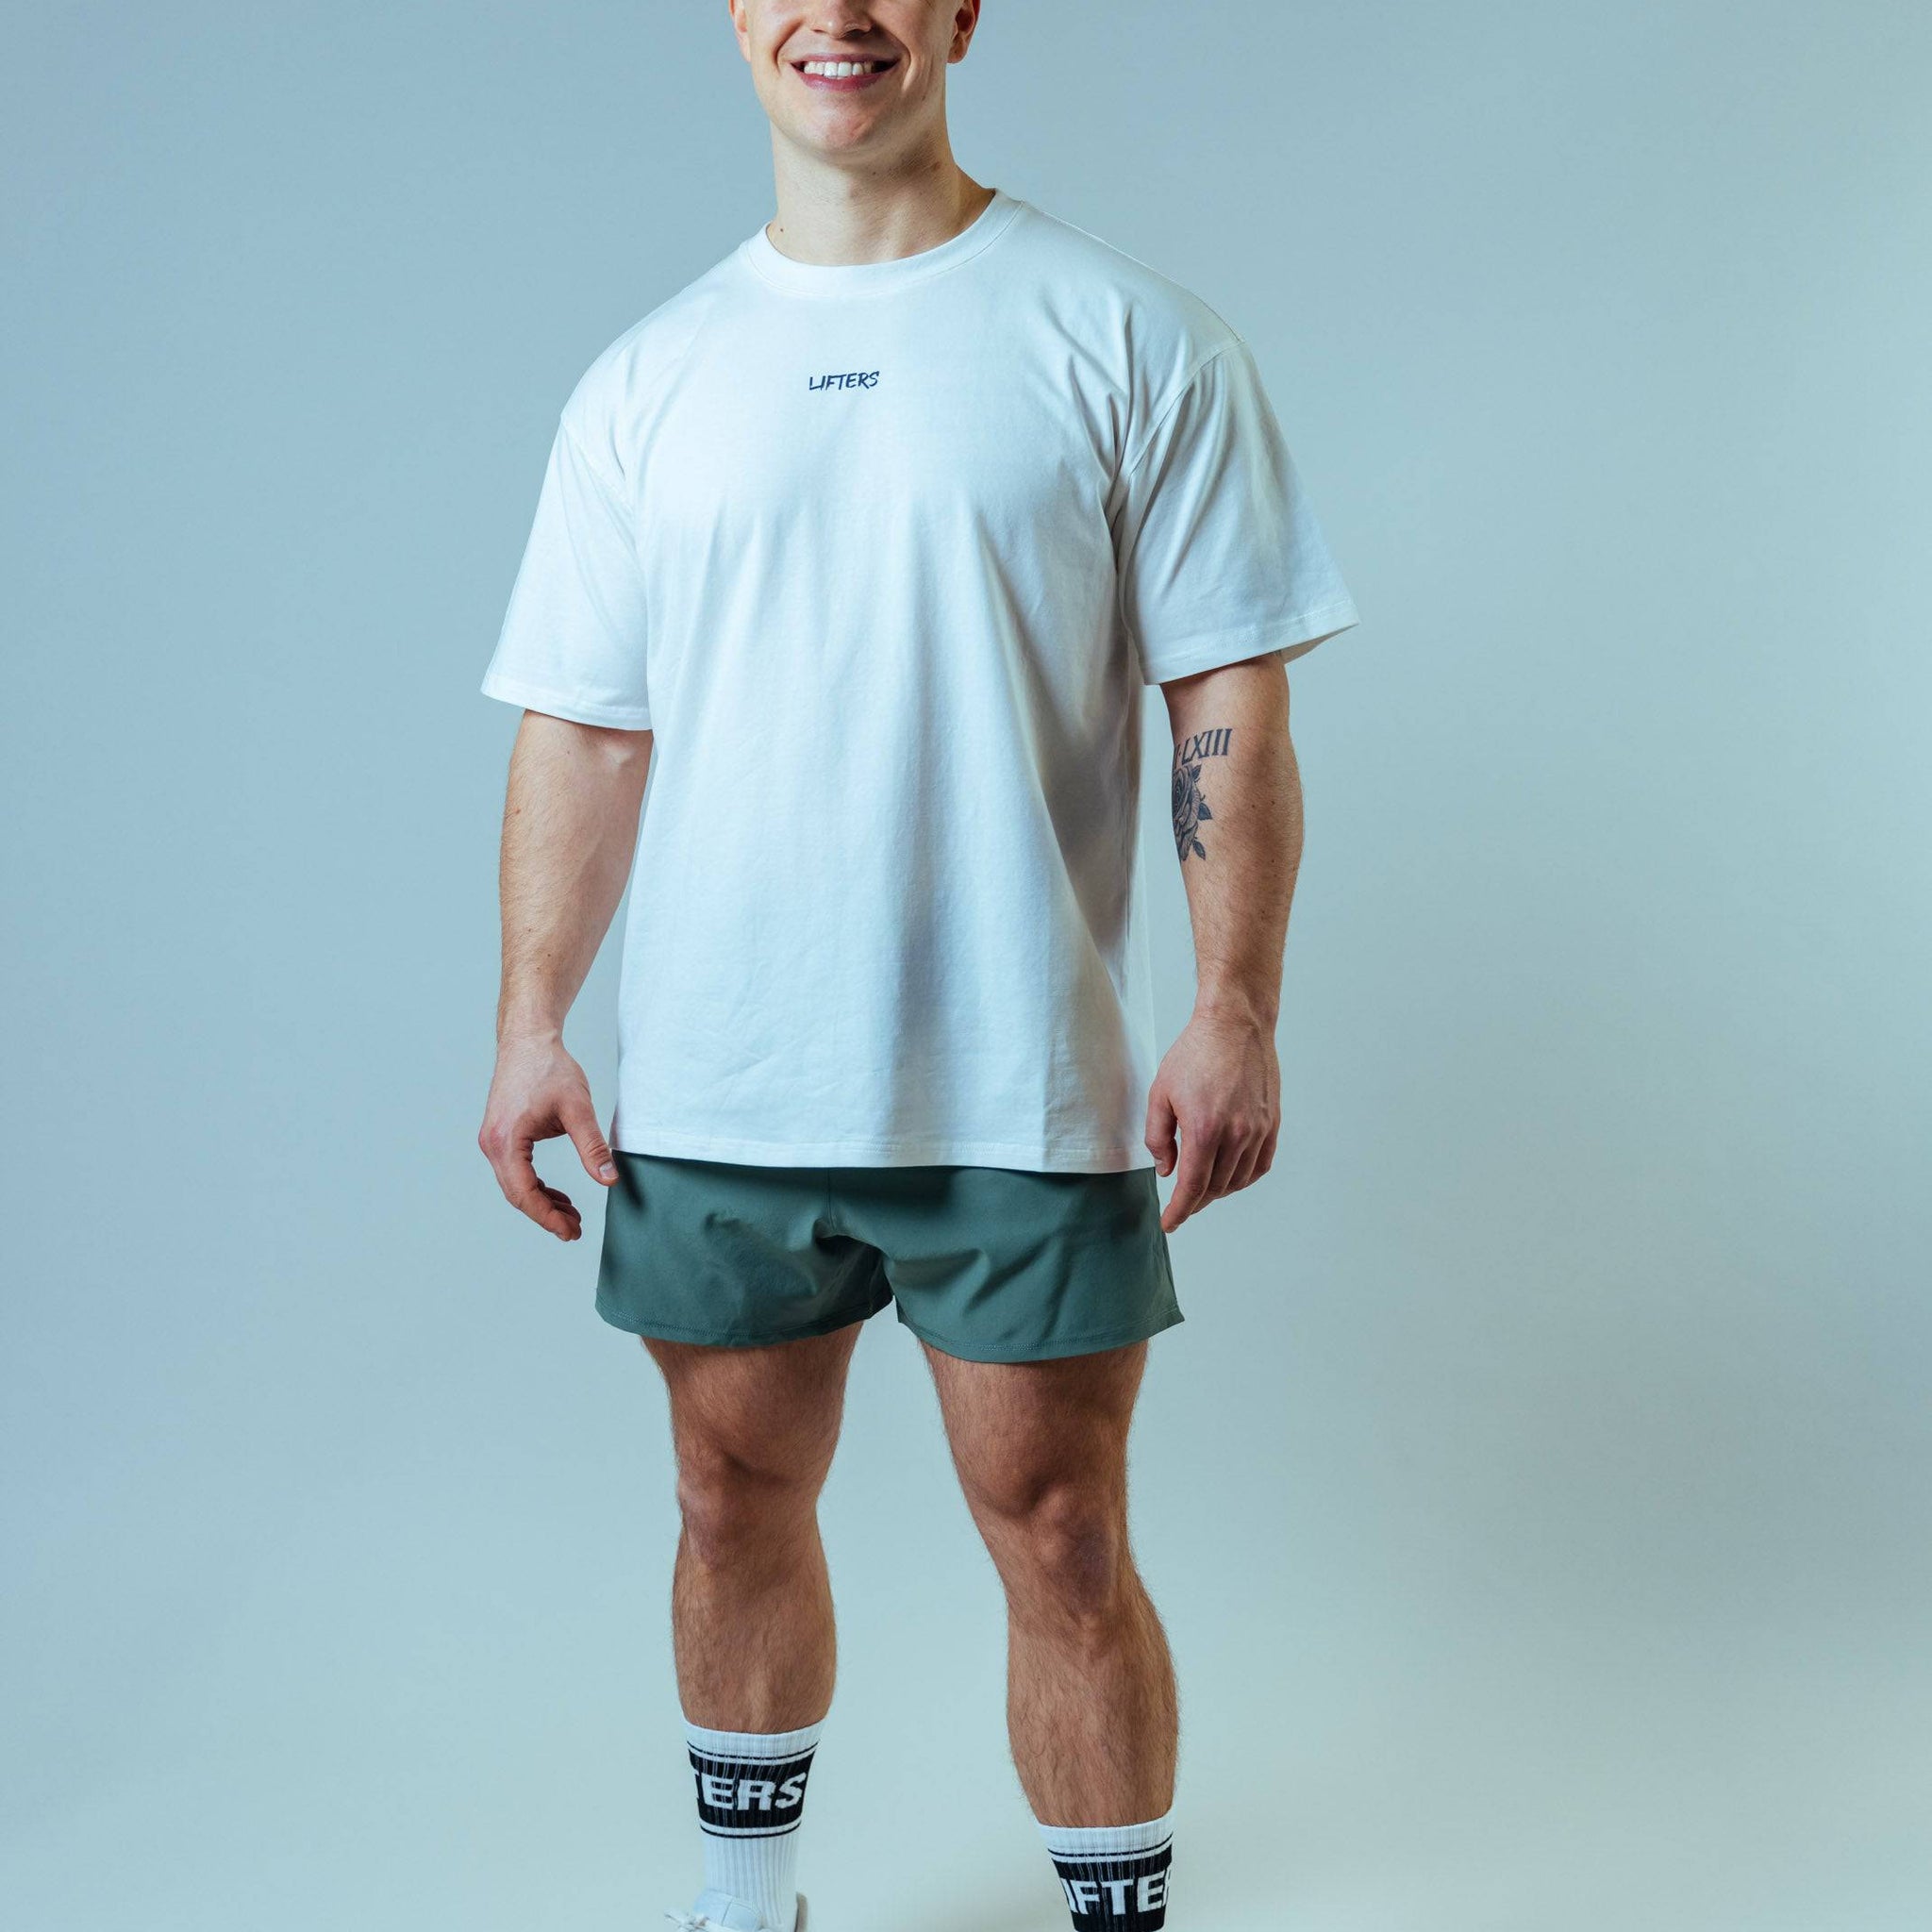 Hochwertige Gym Kleidung - atmungsaktiv und bequem – Lifters Wear